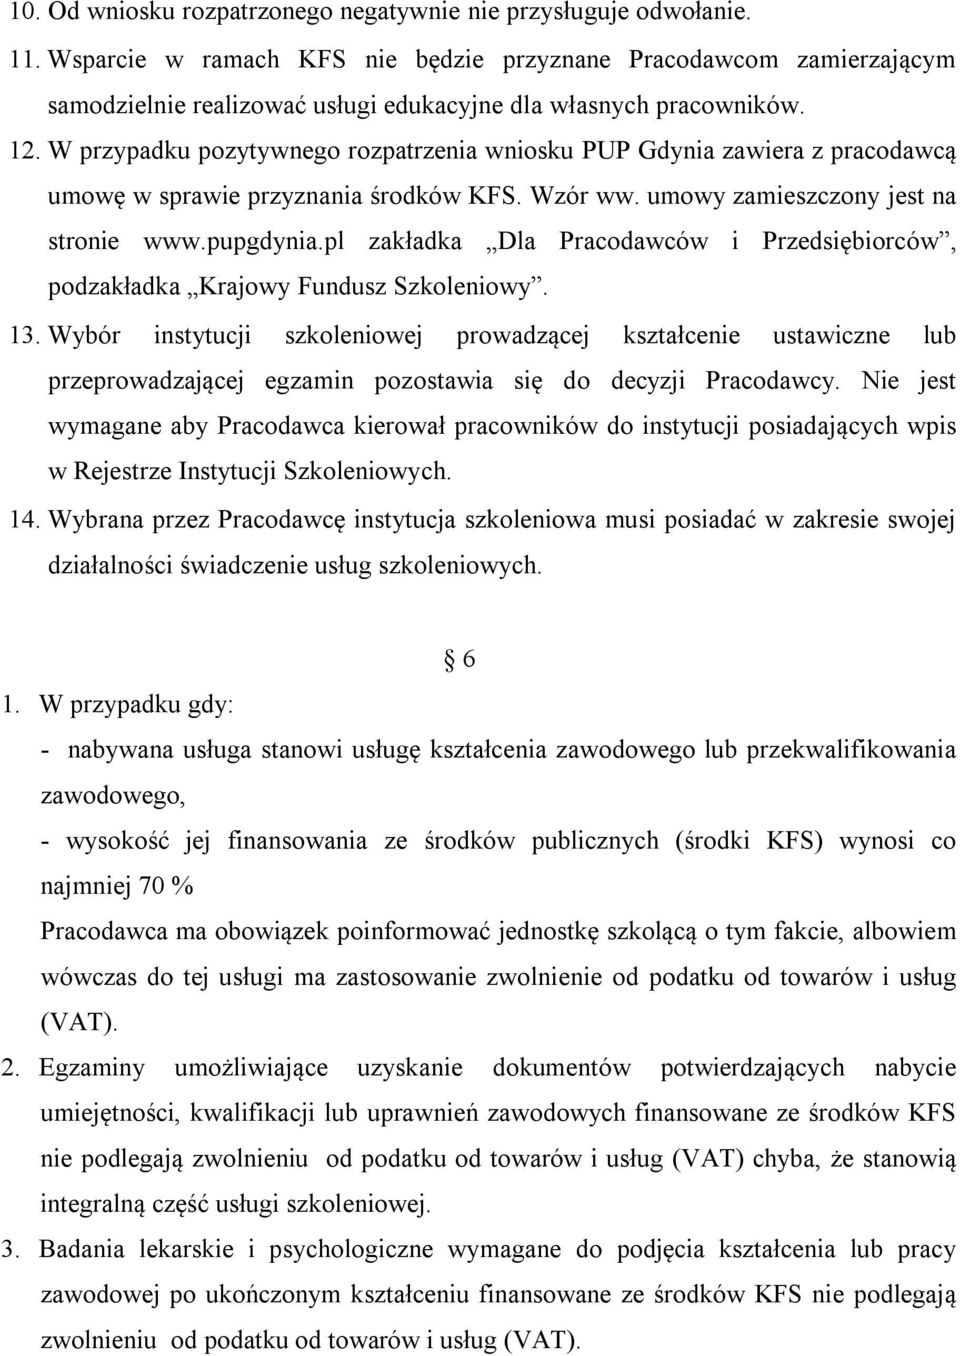 W przypadku pozytywnego rozpatrzenia wniosku PUP Gdynia zawiera z pracodawcą umowę w sprawie przyznania środków KFS. Wzór ww. umowy zamieszczony jest na stronie www.pupgdynia.